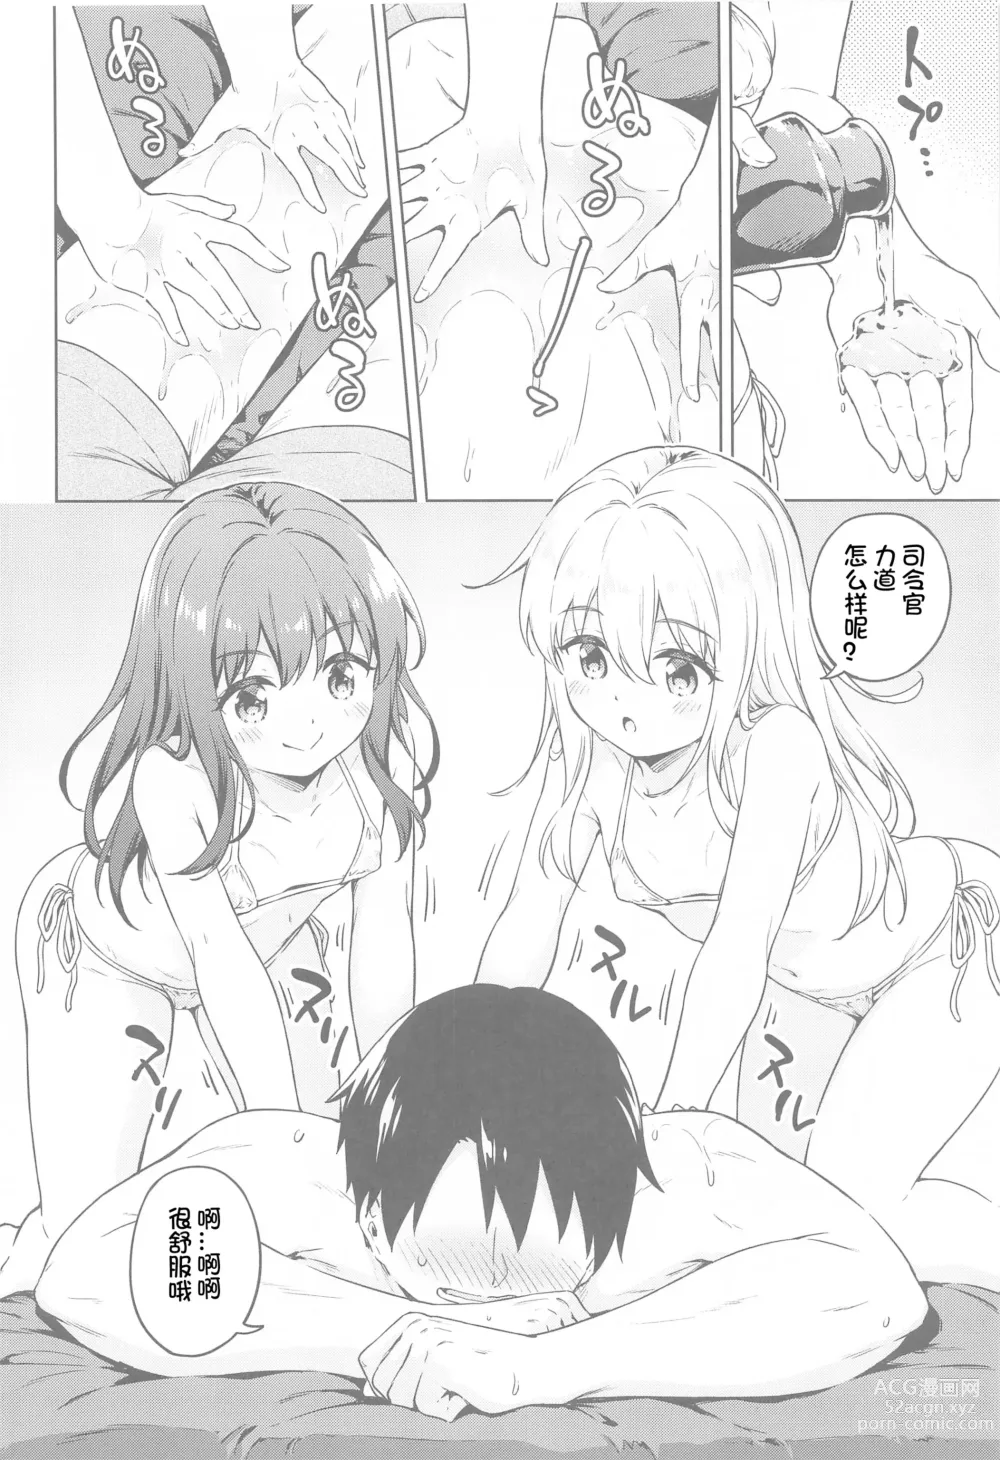 Page 8 of doujinshi Dairoku Refle Akatsuki Hibiki Nurunuru Massage